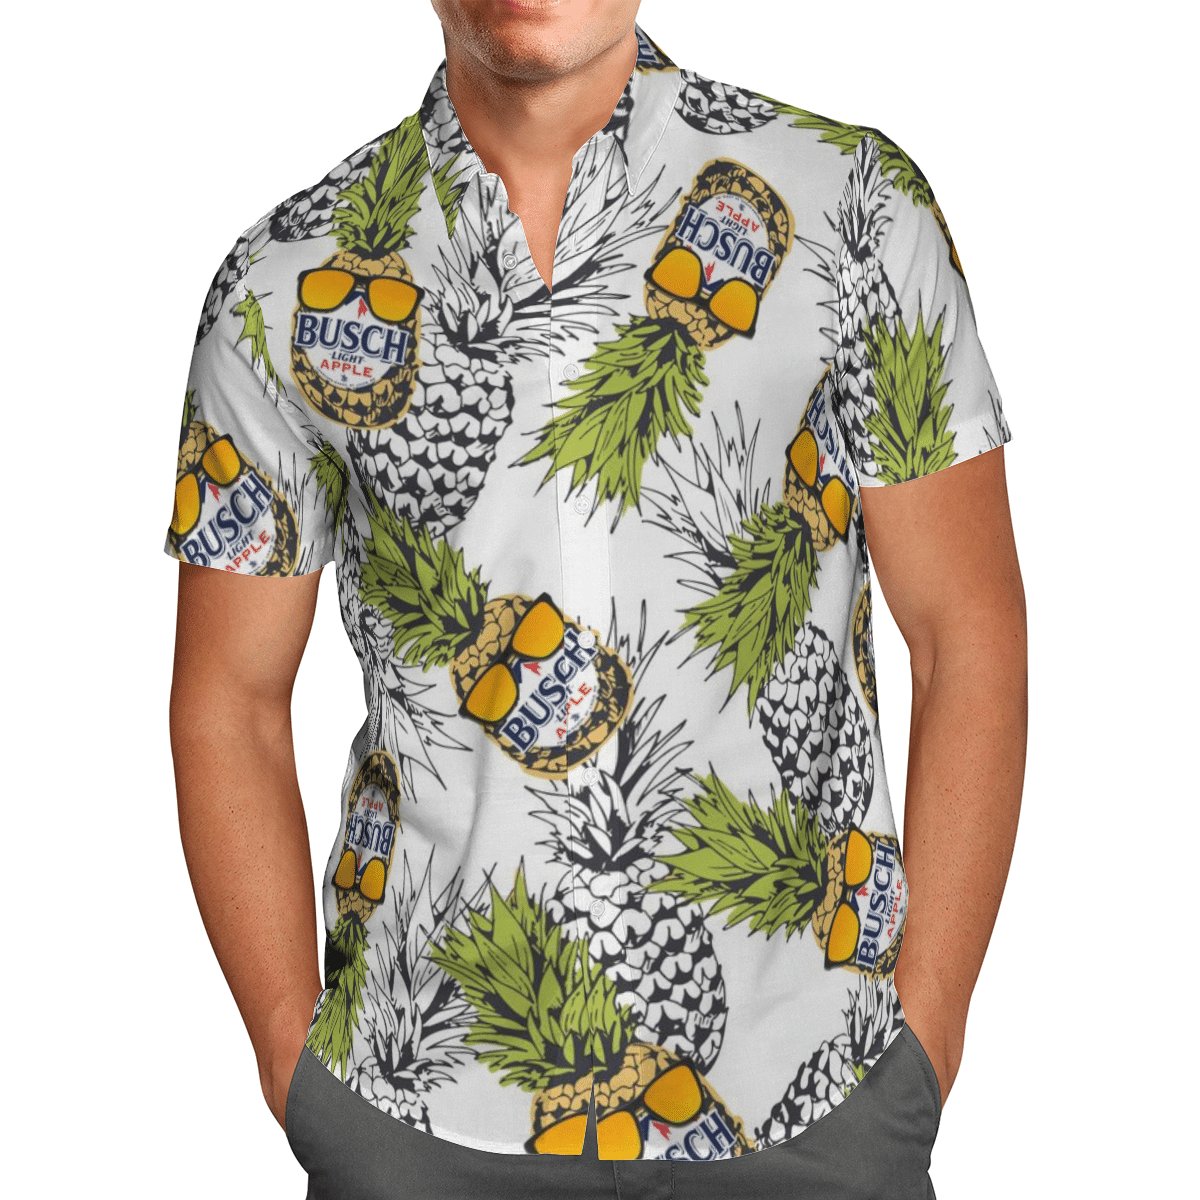 Busch light apple Hawaiian shirt and short 1